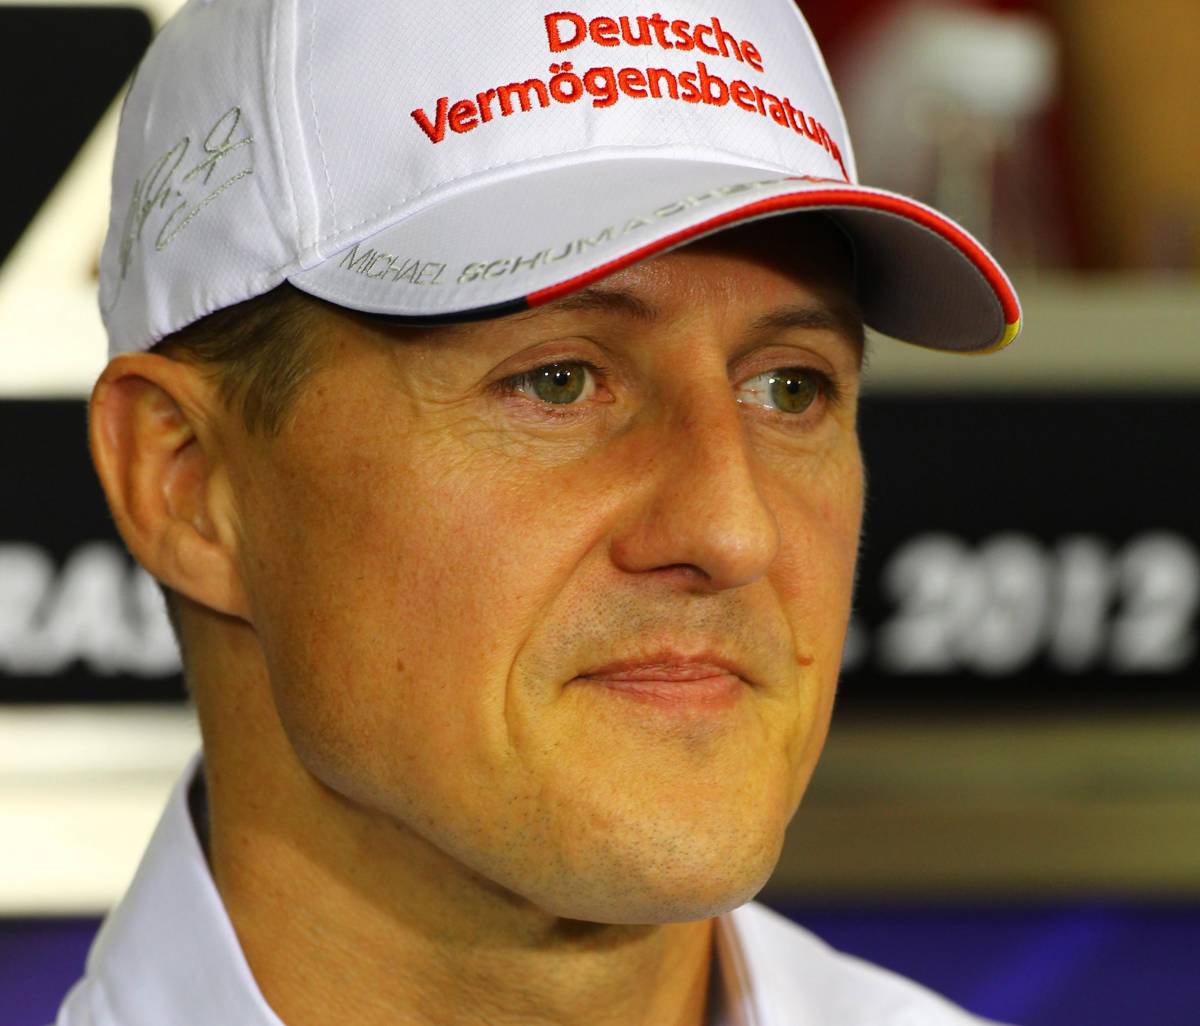 Schiaffo per Schumacher: addio alla sua pista